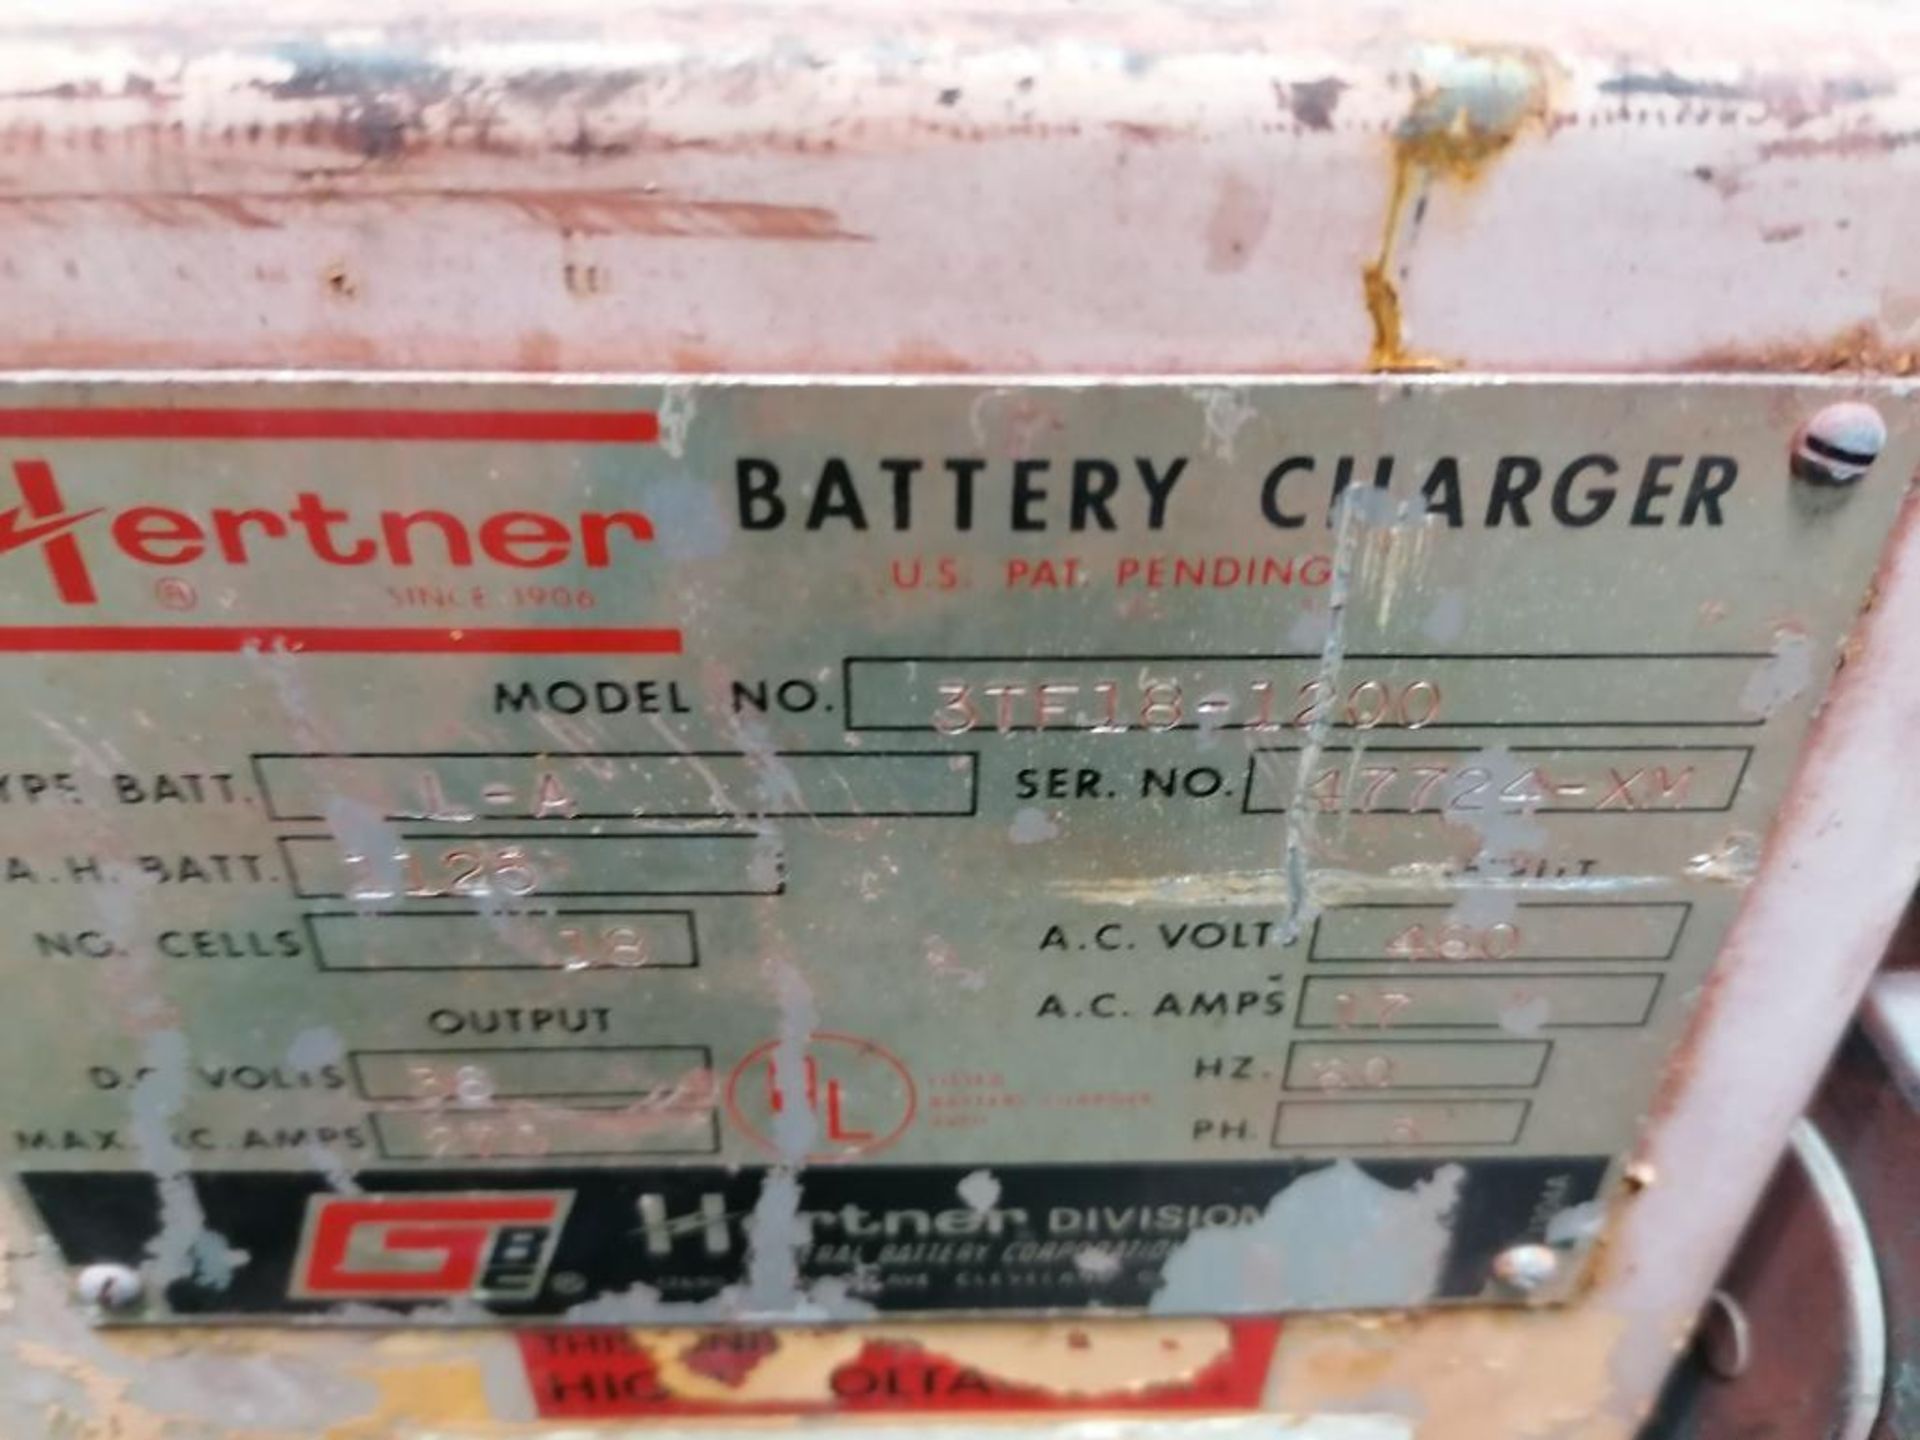 (1) Hertner Industrial Forklift Battery Charger, Model 3TF18-1200, Serial #47724-XM, Input 460V, - Image 5 of 11